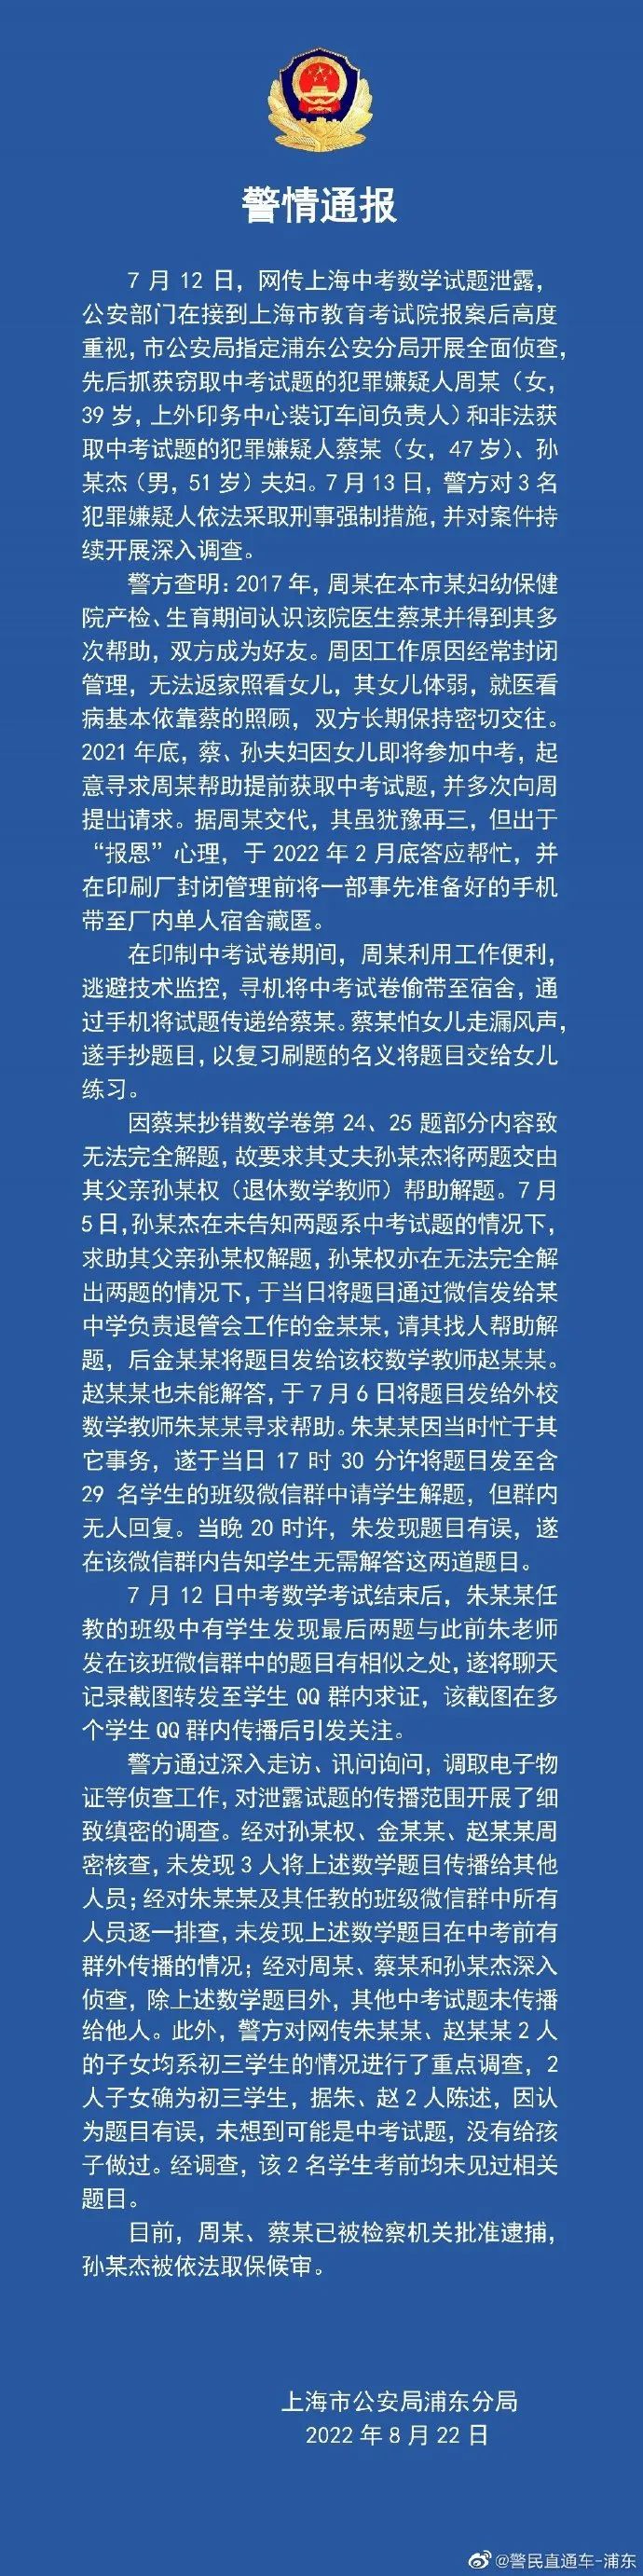 上海通报中考泄题事件调查情况公布